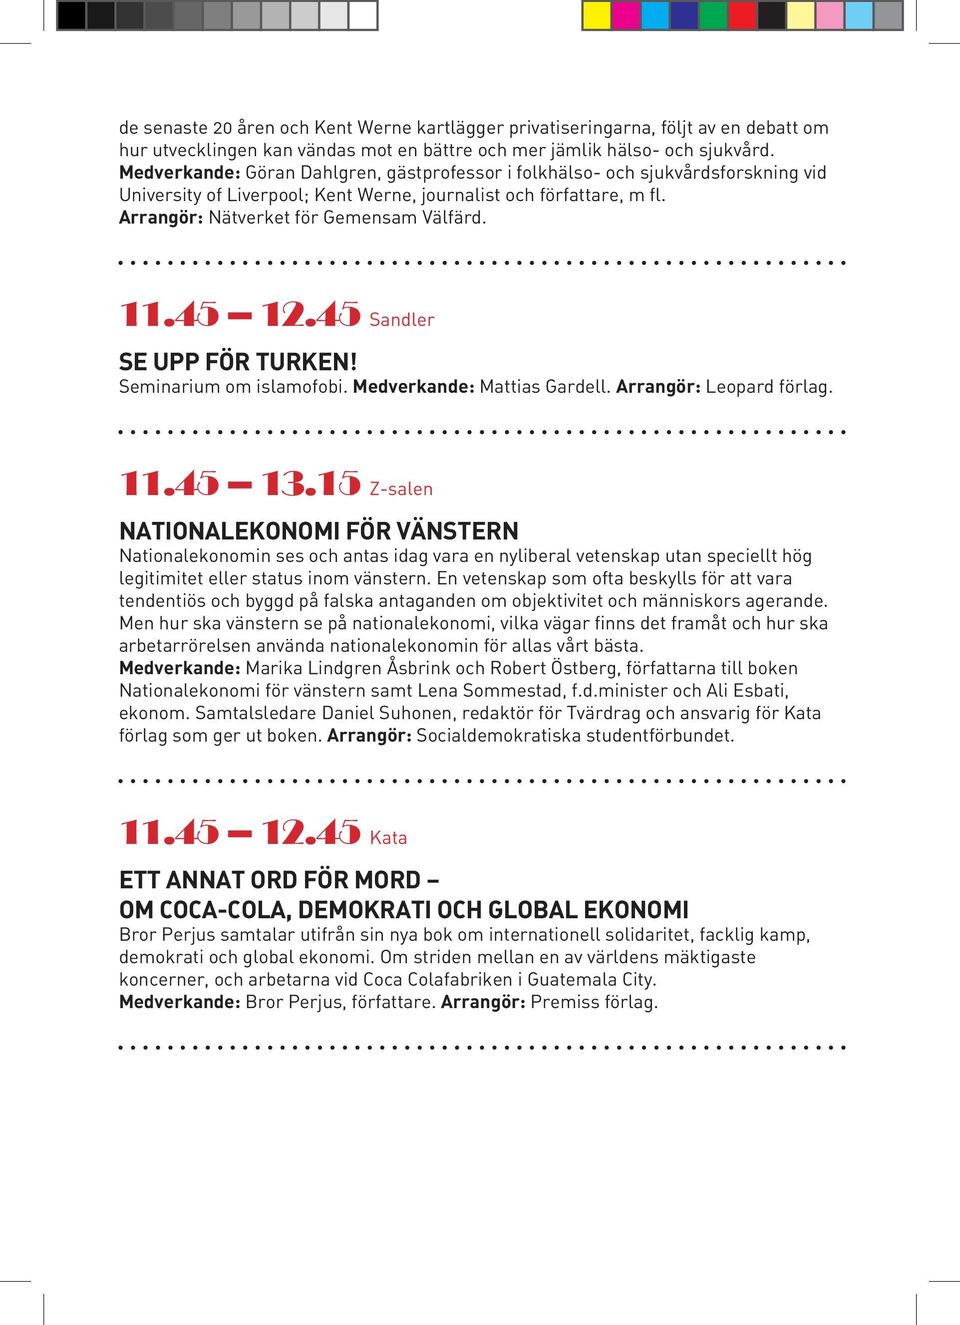 45 12.45 Sandler SE UPP FÖR TURKEN! Seminarium om islamofobi. Medverkande: Mattias Gardell. Arrangör: Leopard förlag. 11.45 13.